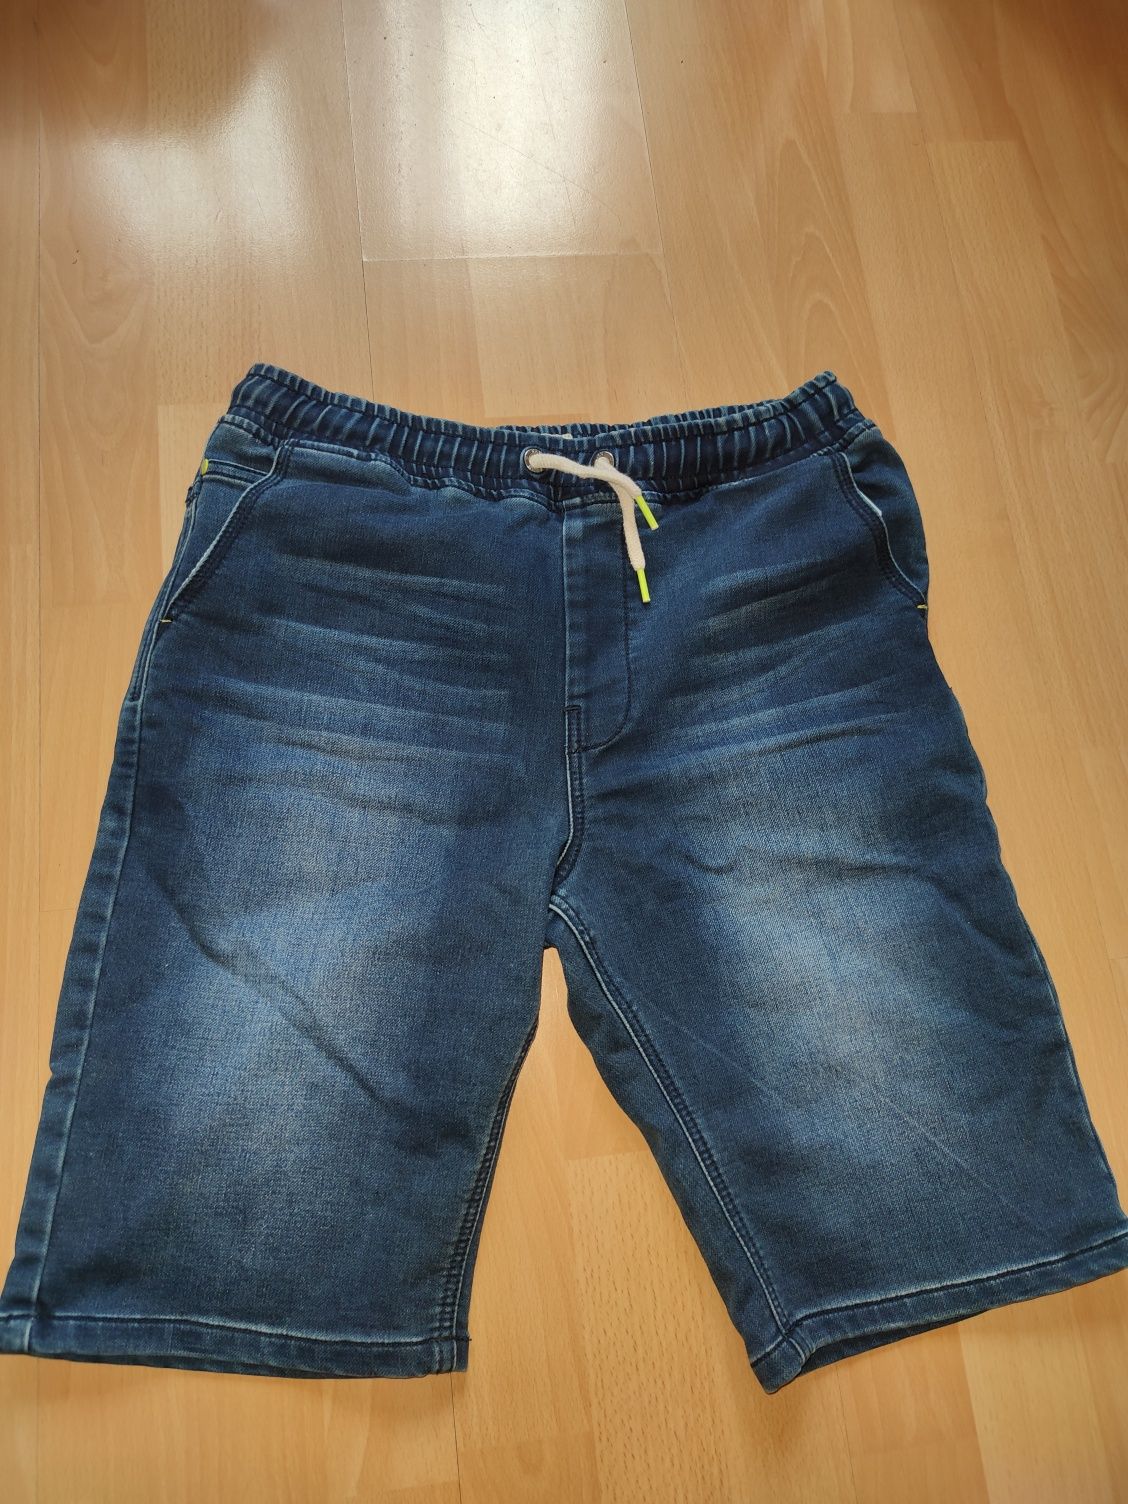 Next szorty spodenki męskie jeansowe S